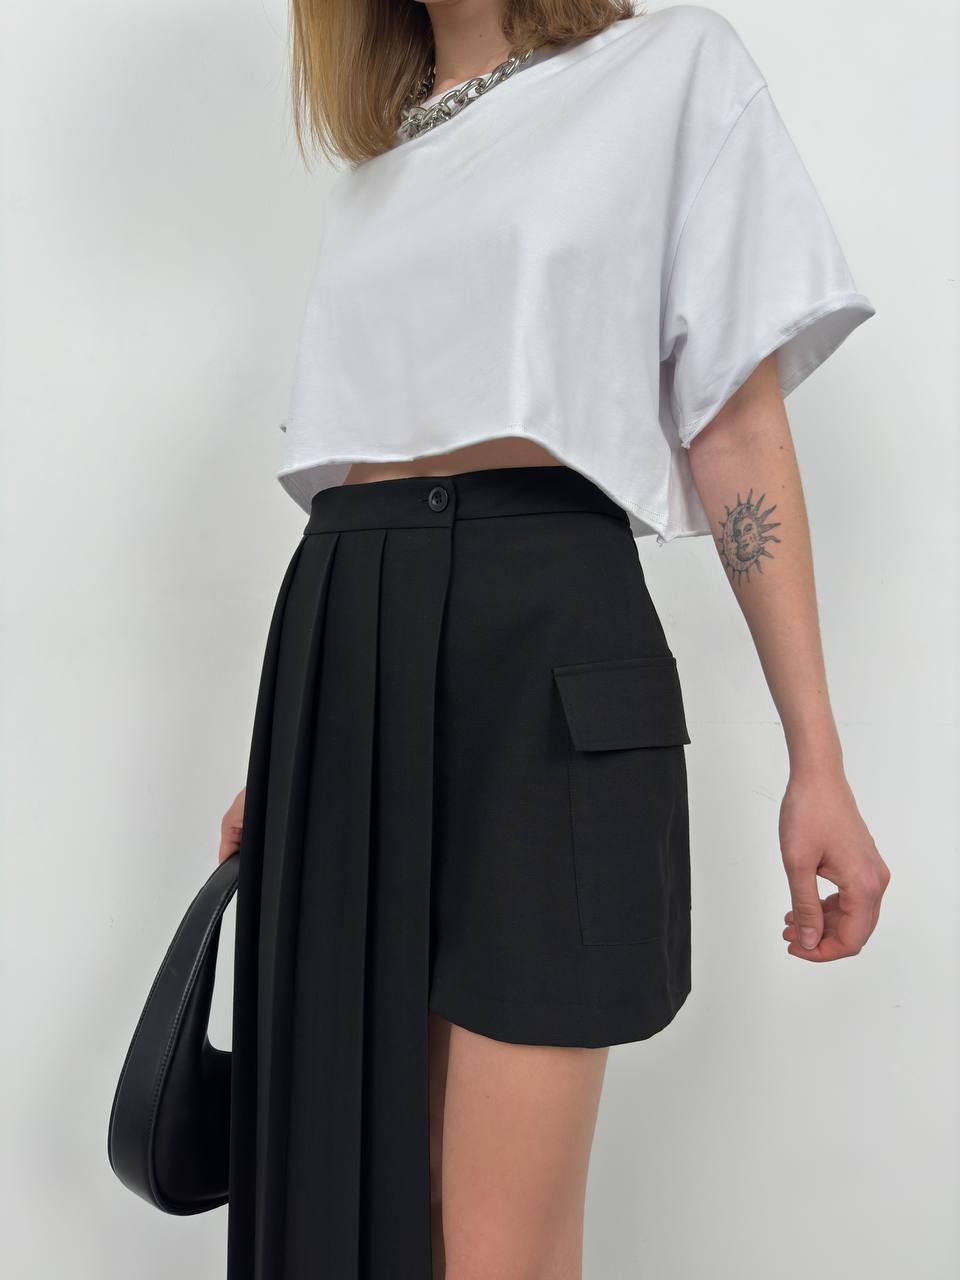 BK1774 - Skirt